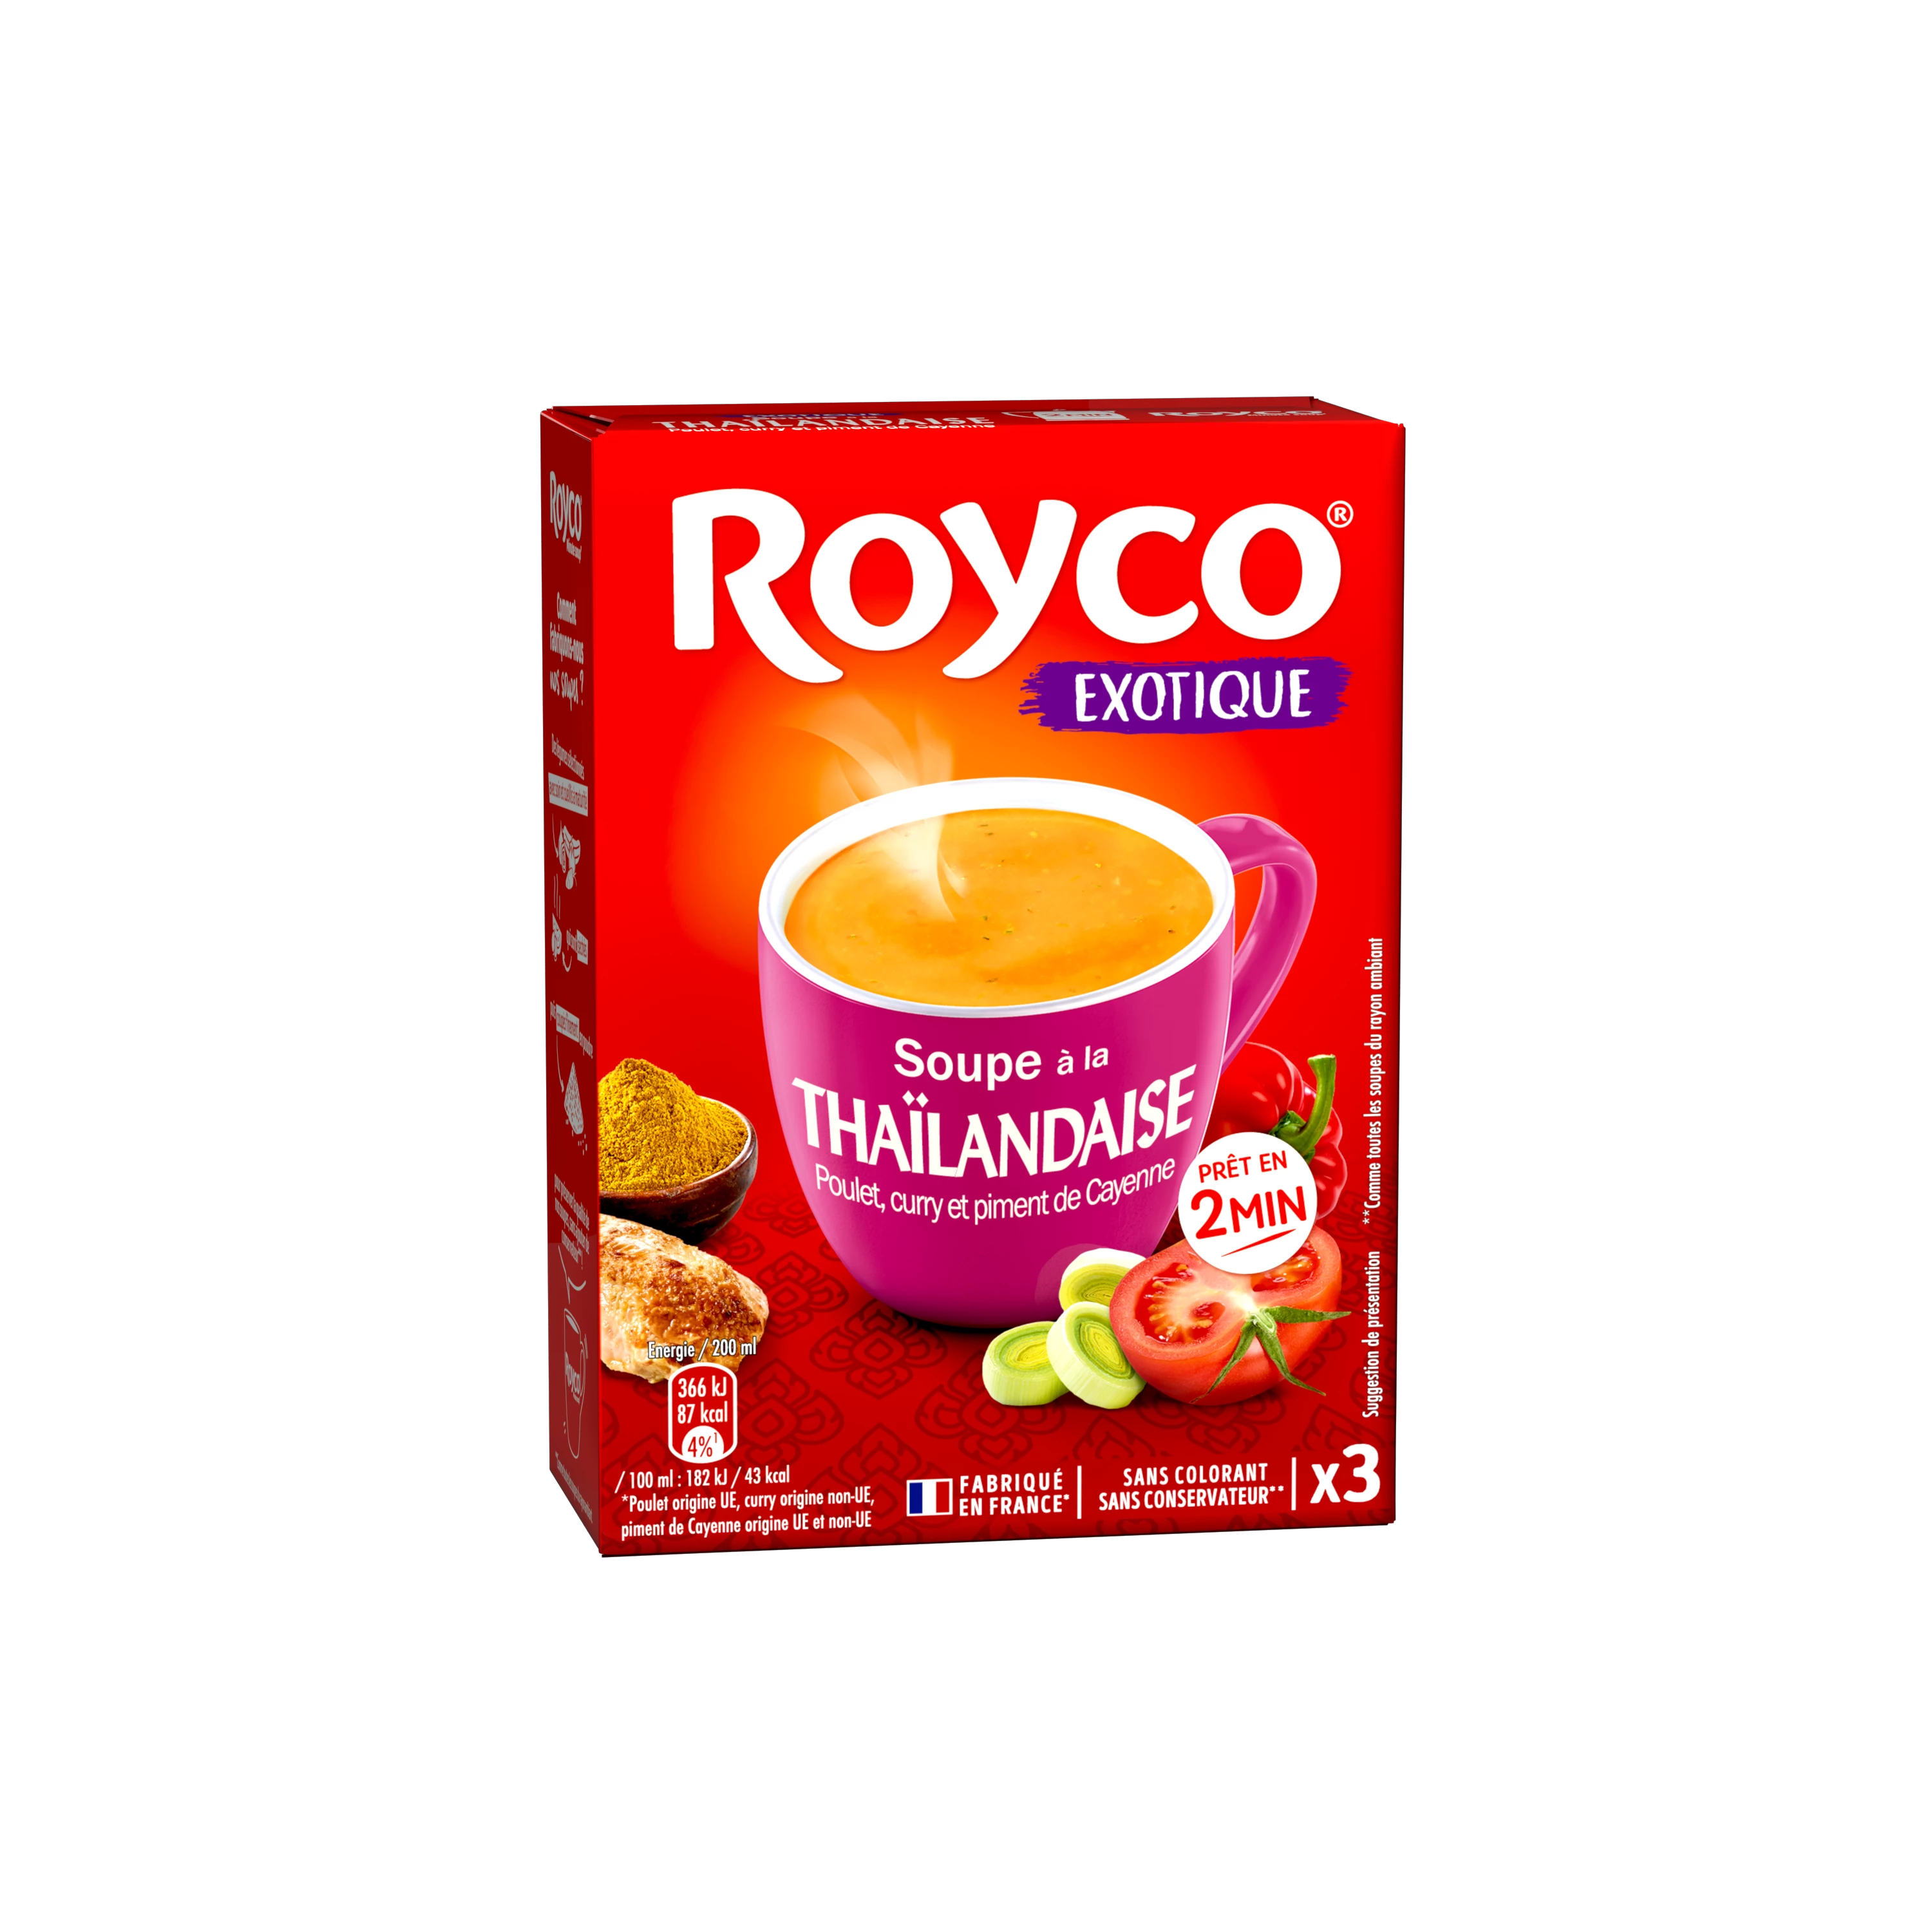 Sopa tailandesa, 58 g - ROYCO